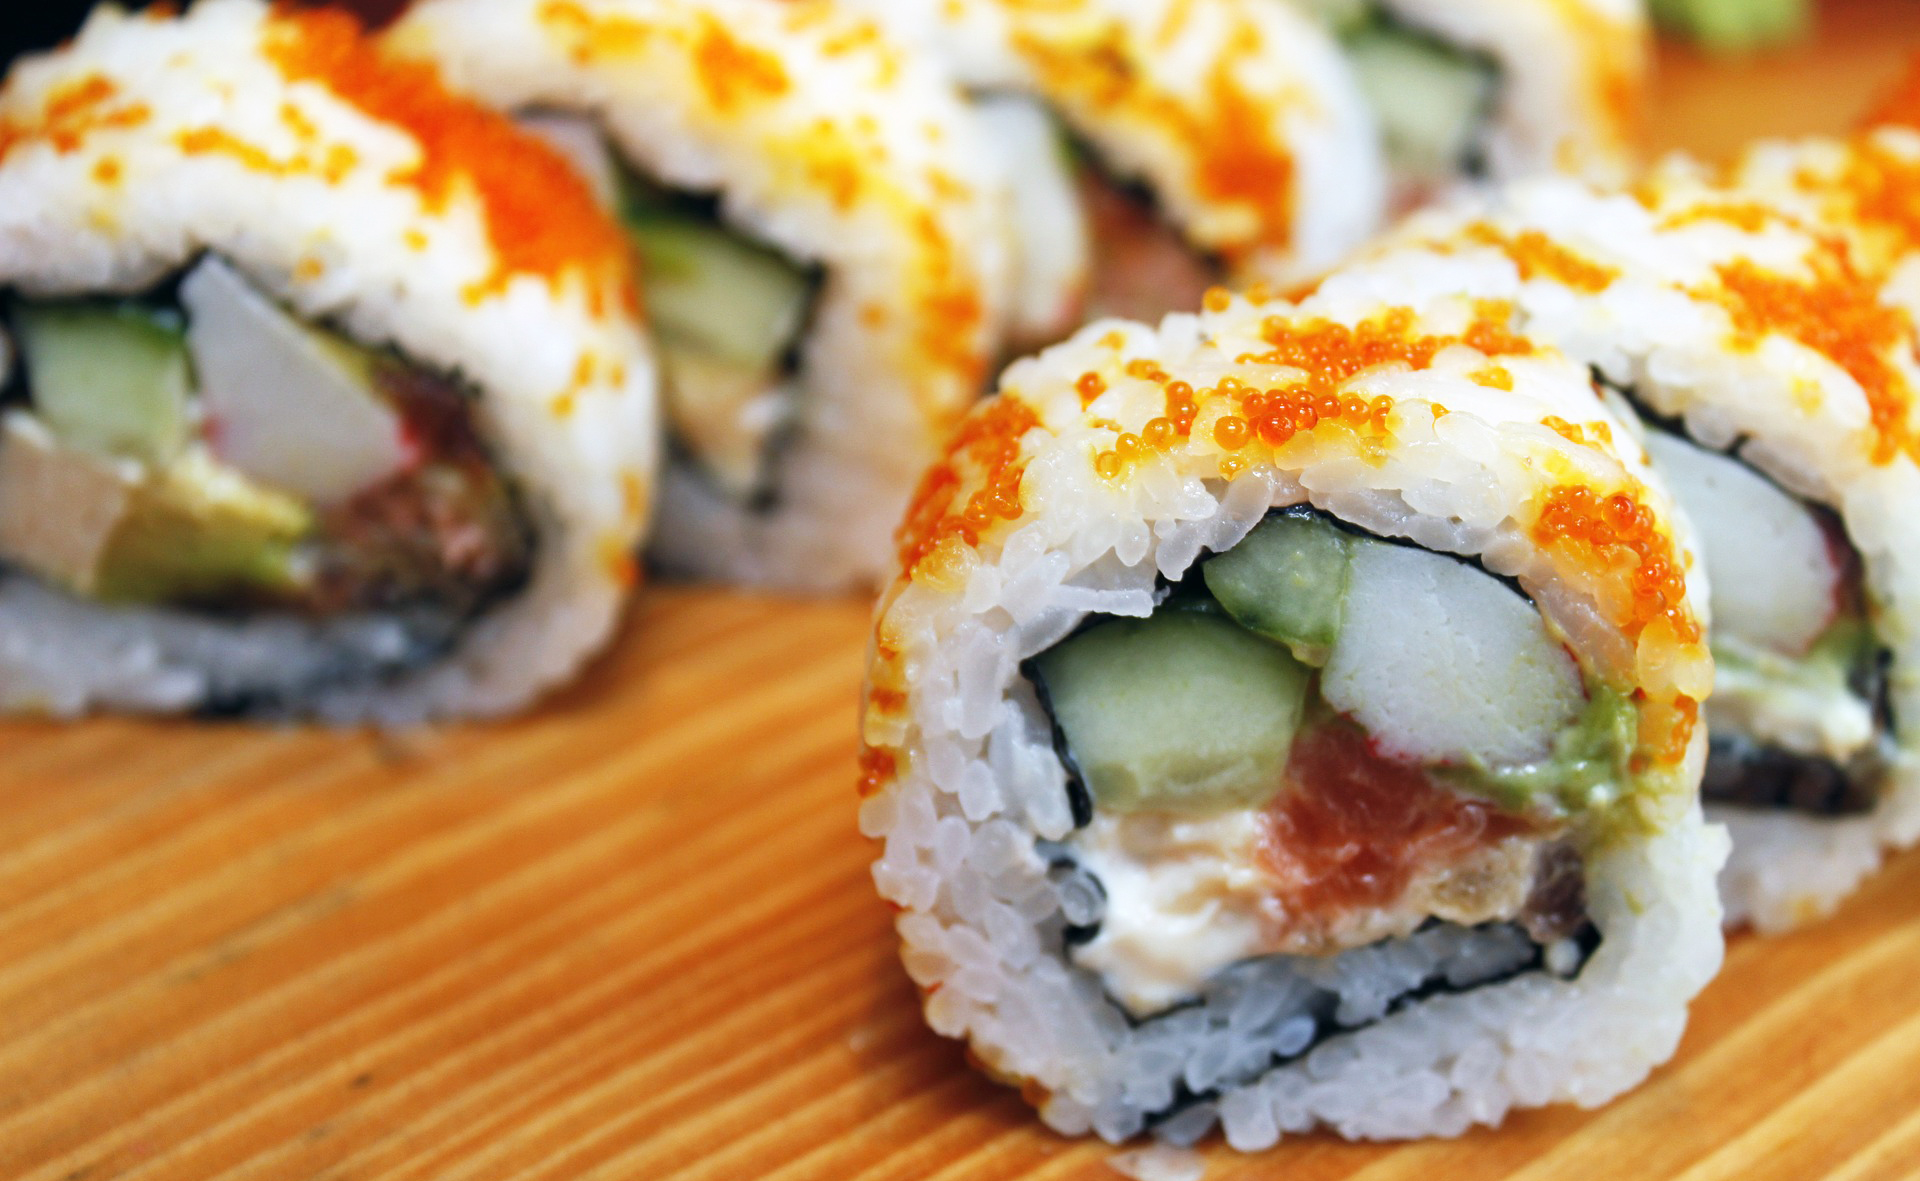 Eat sushi at a sushi train restaurant in osaka